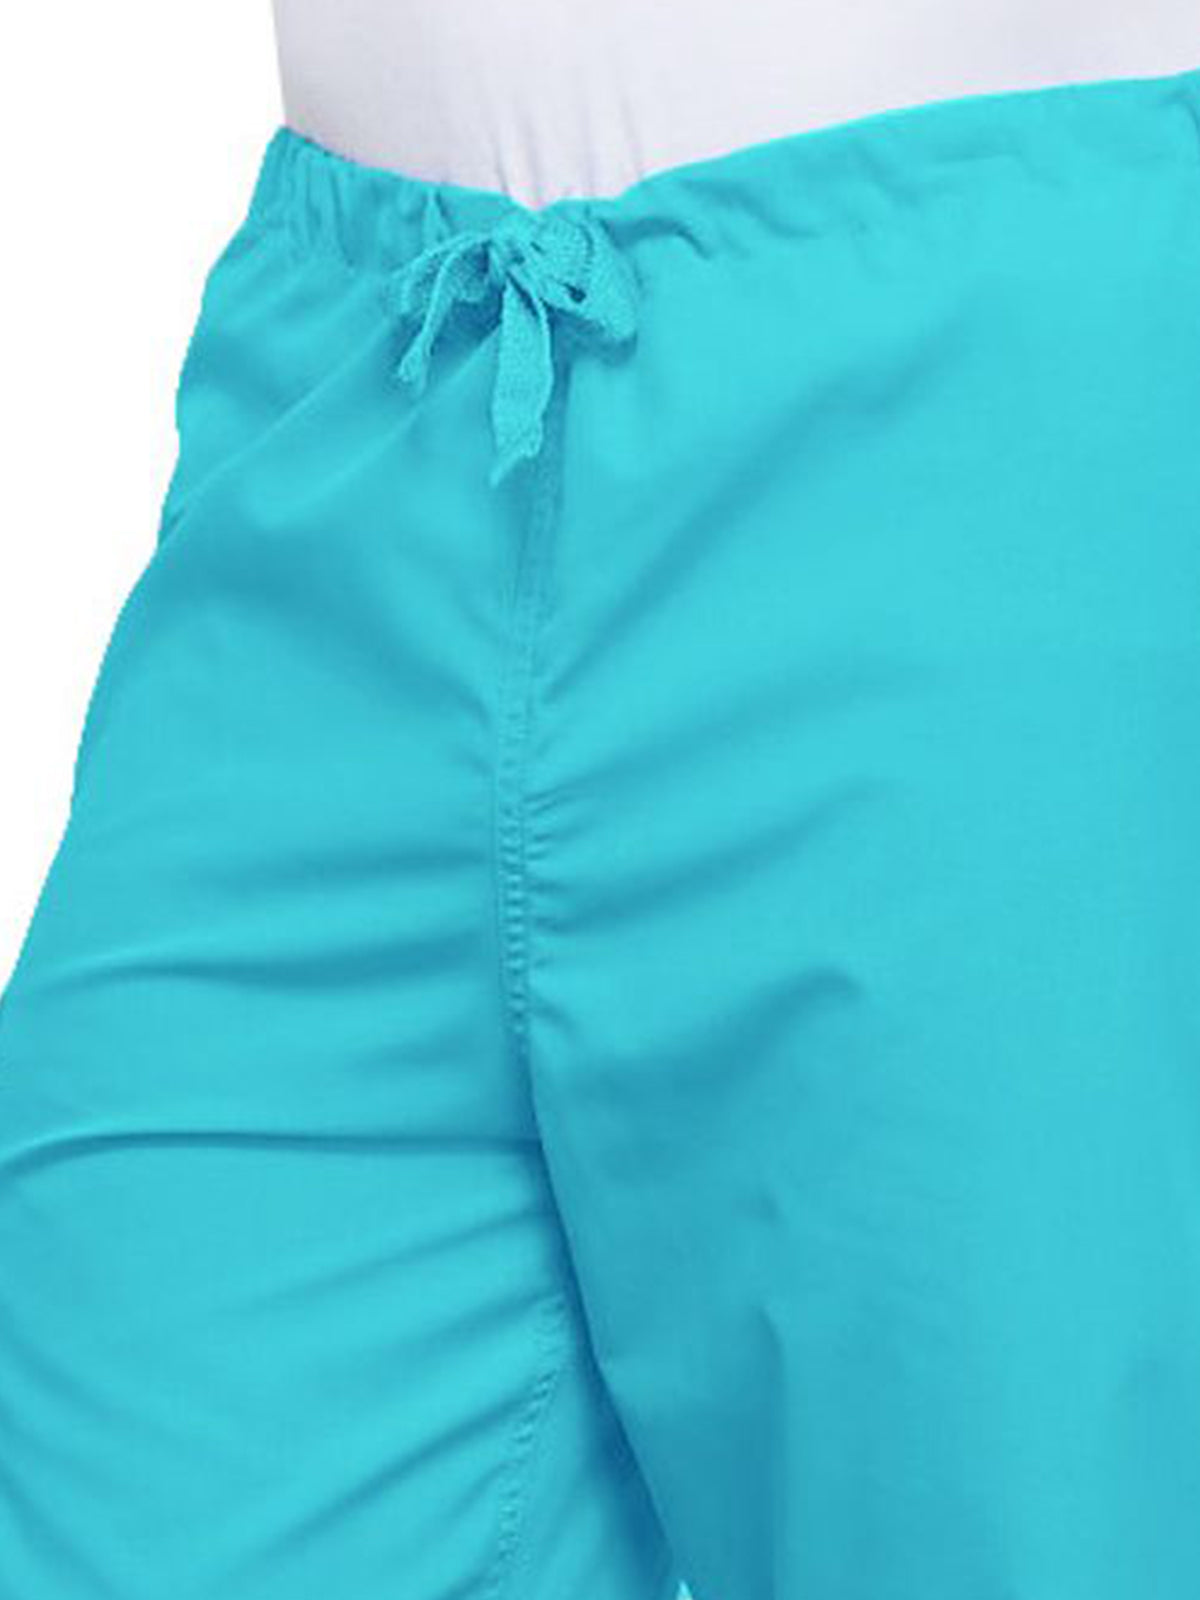 Unisex 2-Pocket Drawstring Cargo Pant - 4100 - Turquoise